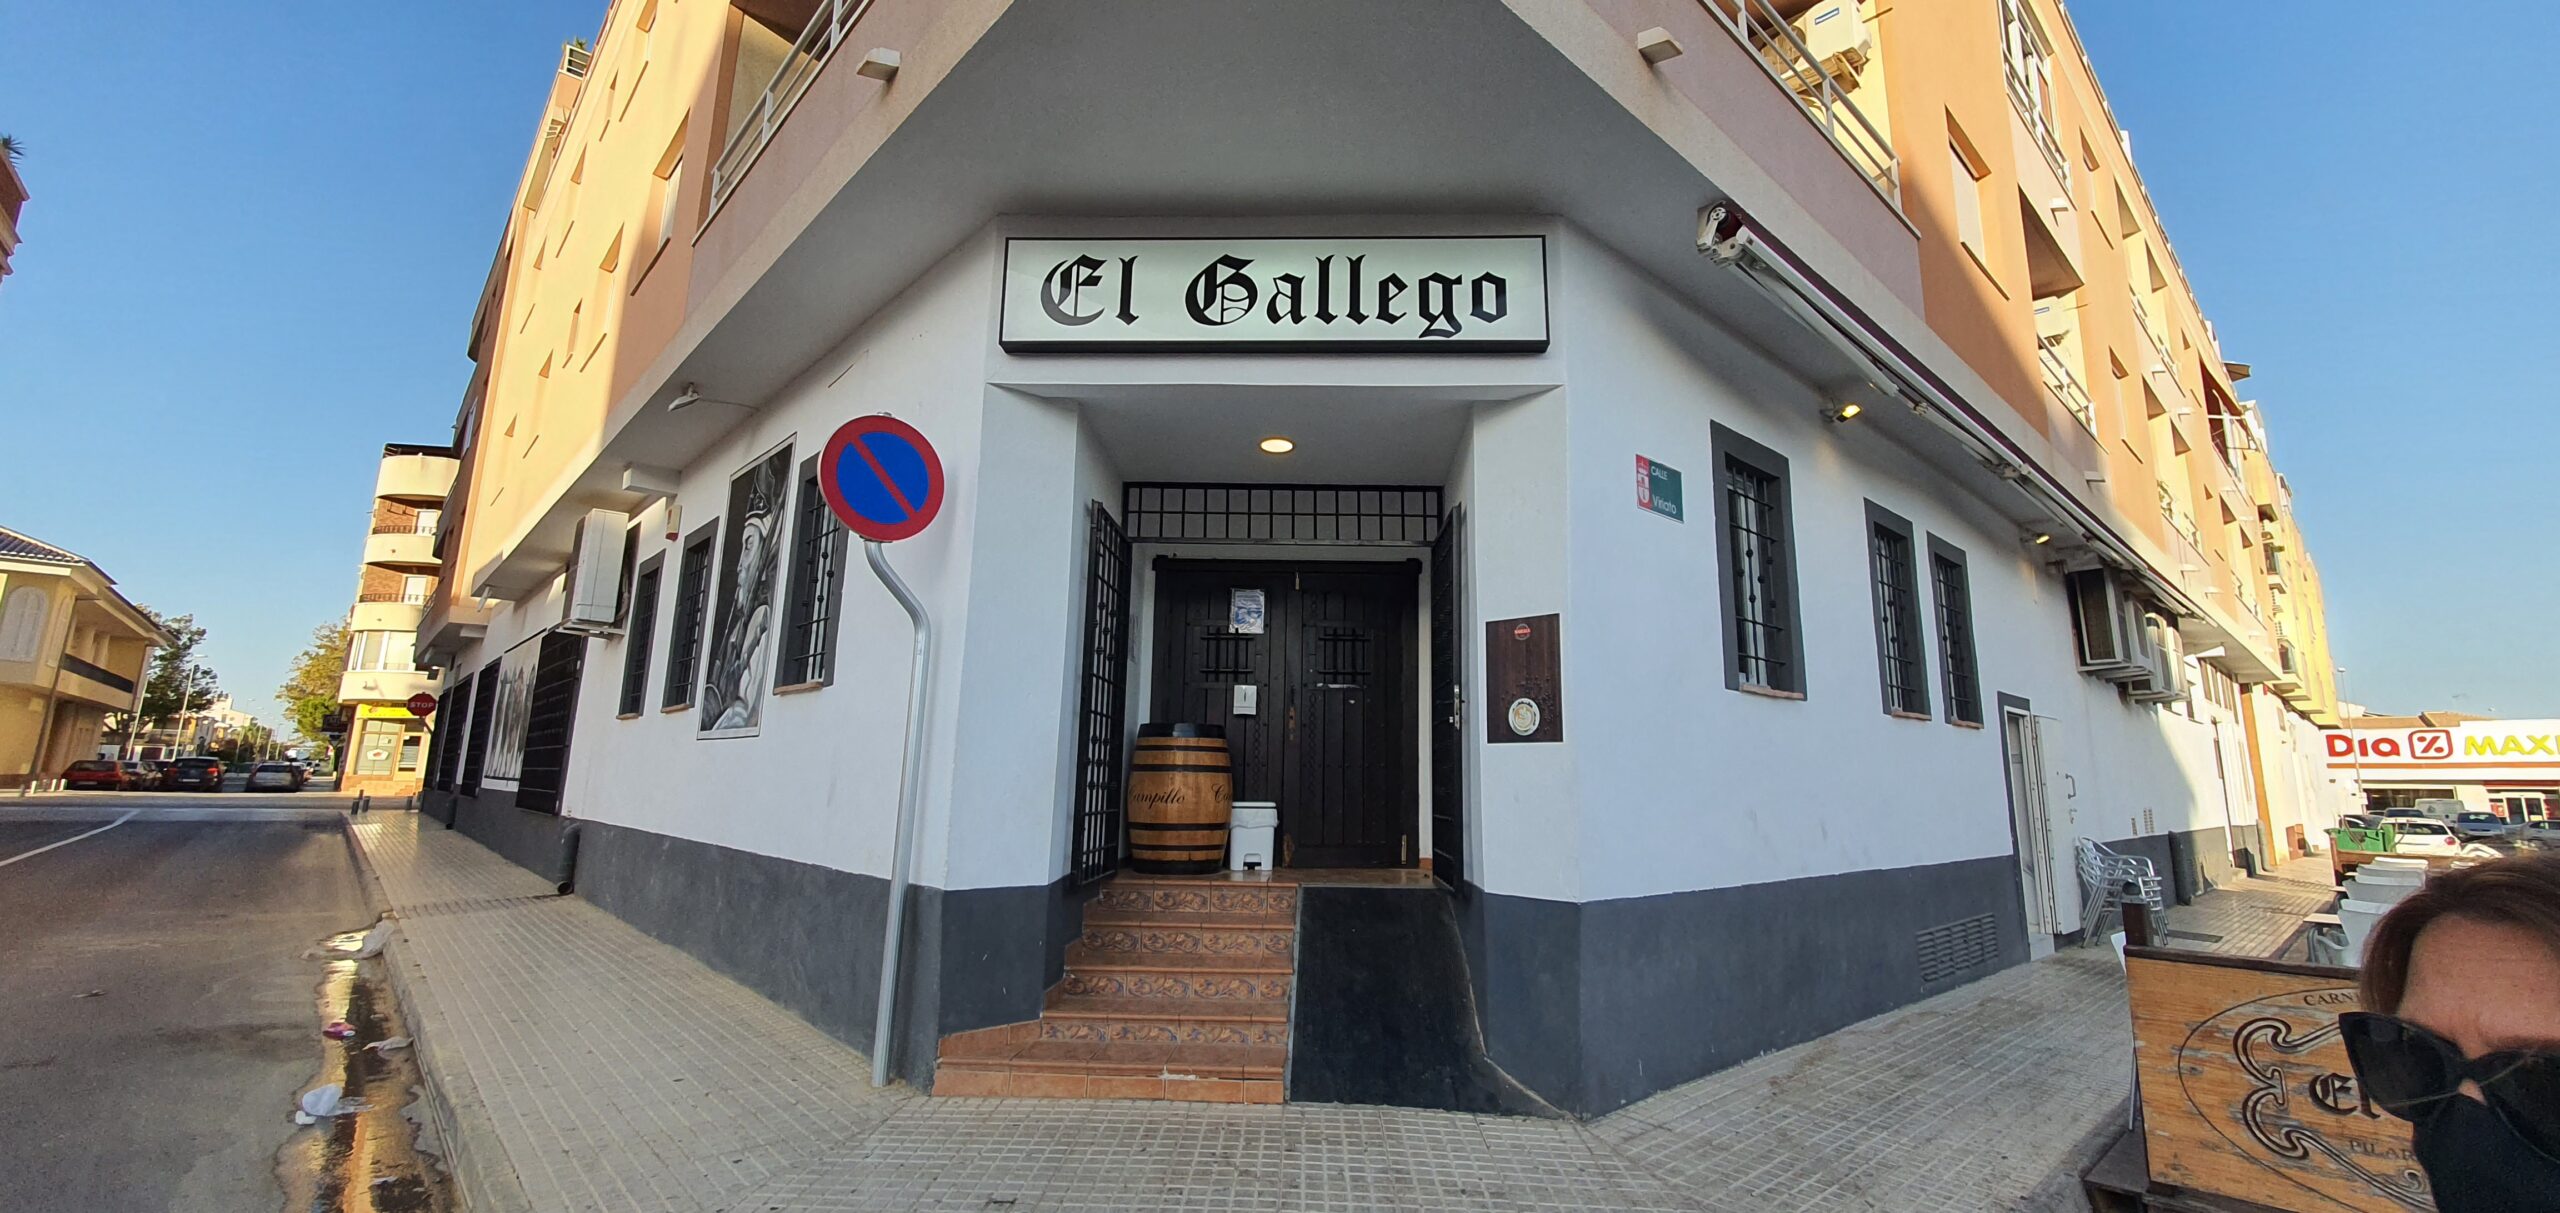 El Gallego Restaurant Review, Pilar de la Horadada